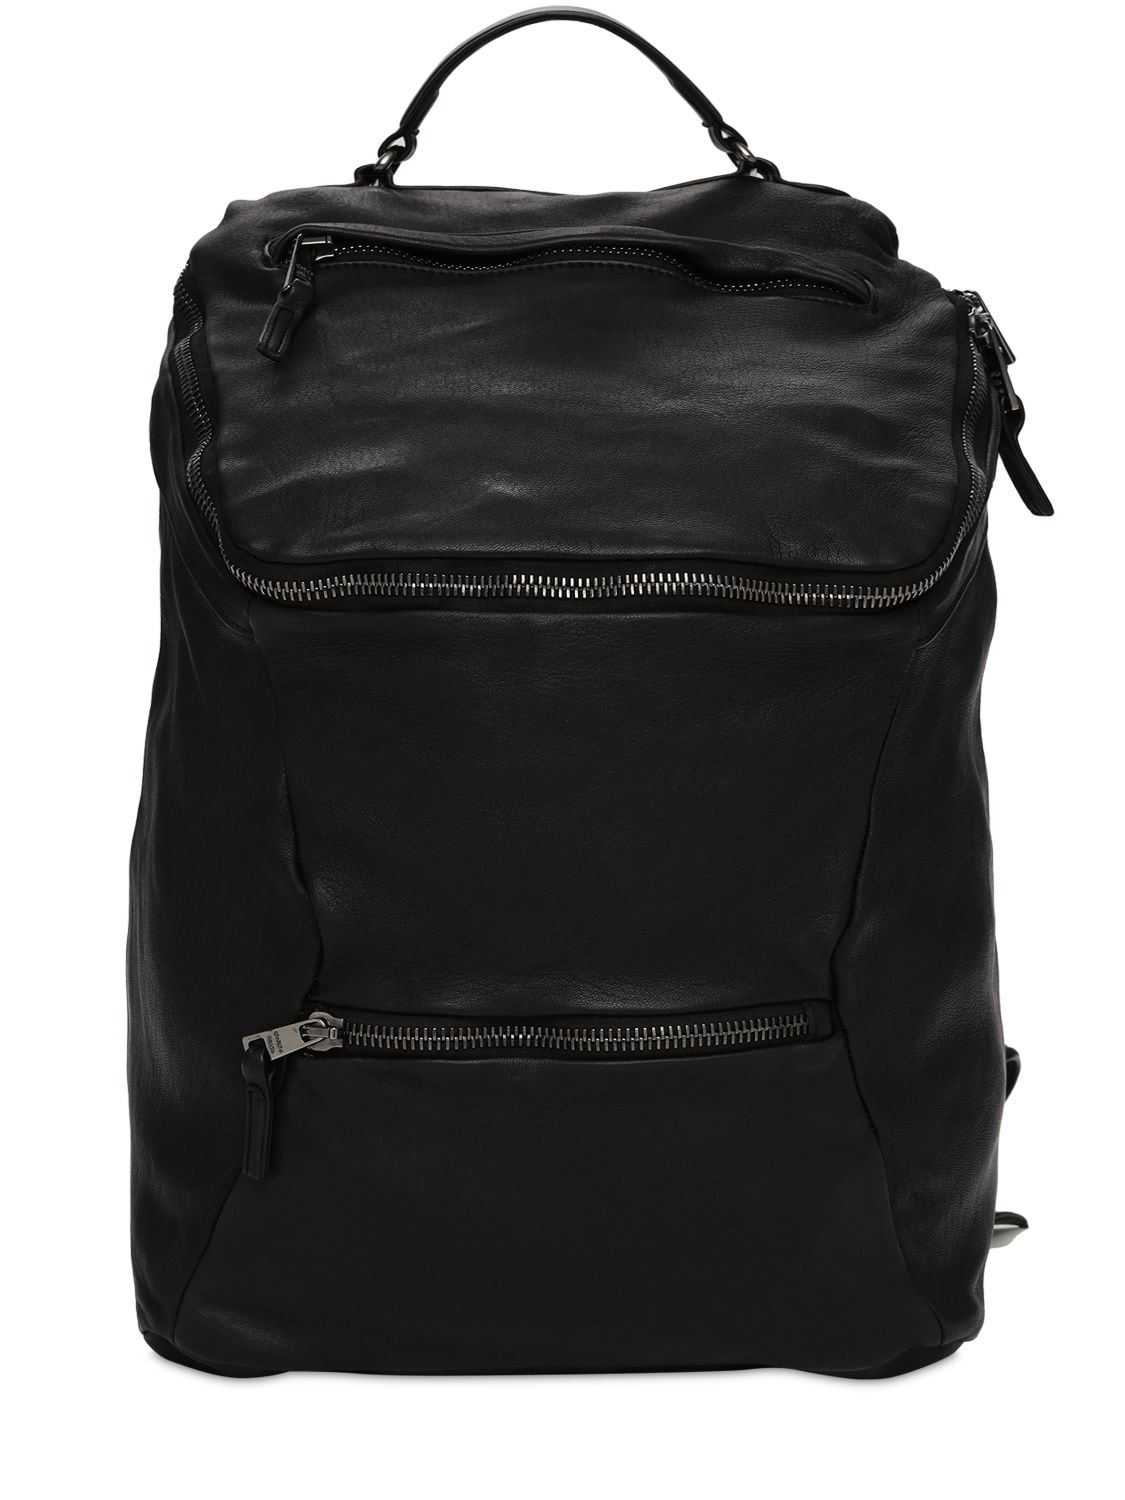 GIORGIO BRATO Leather Backpack